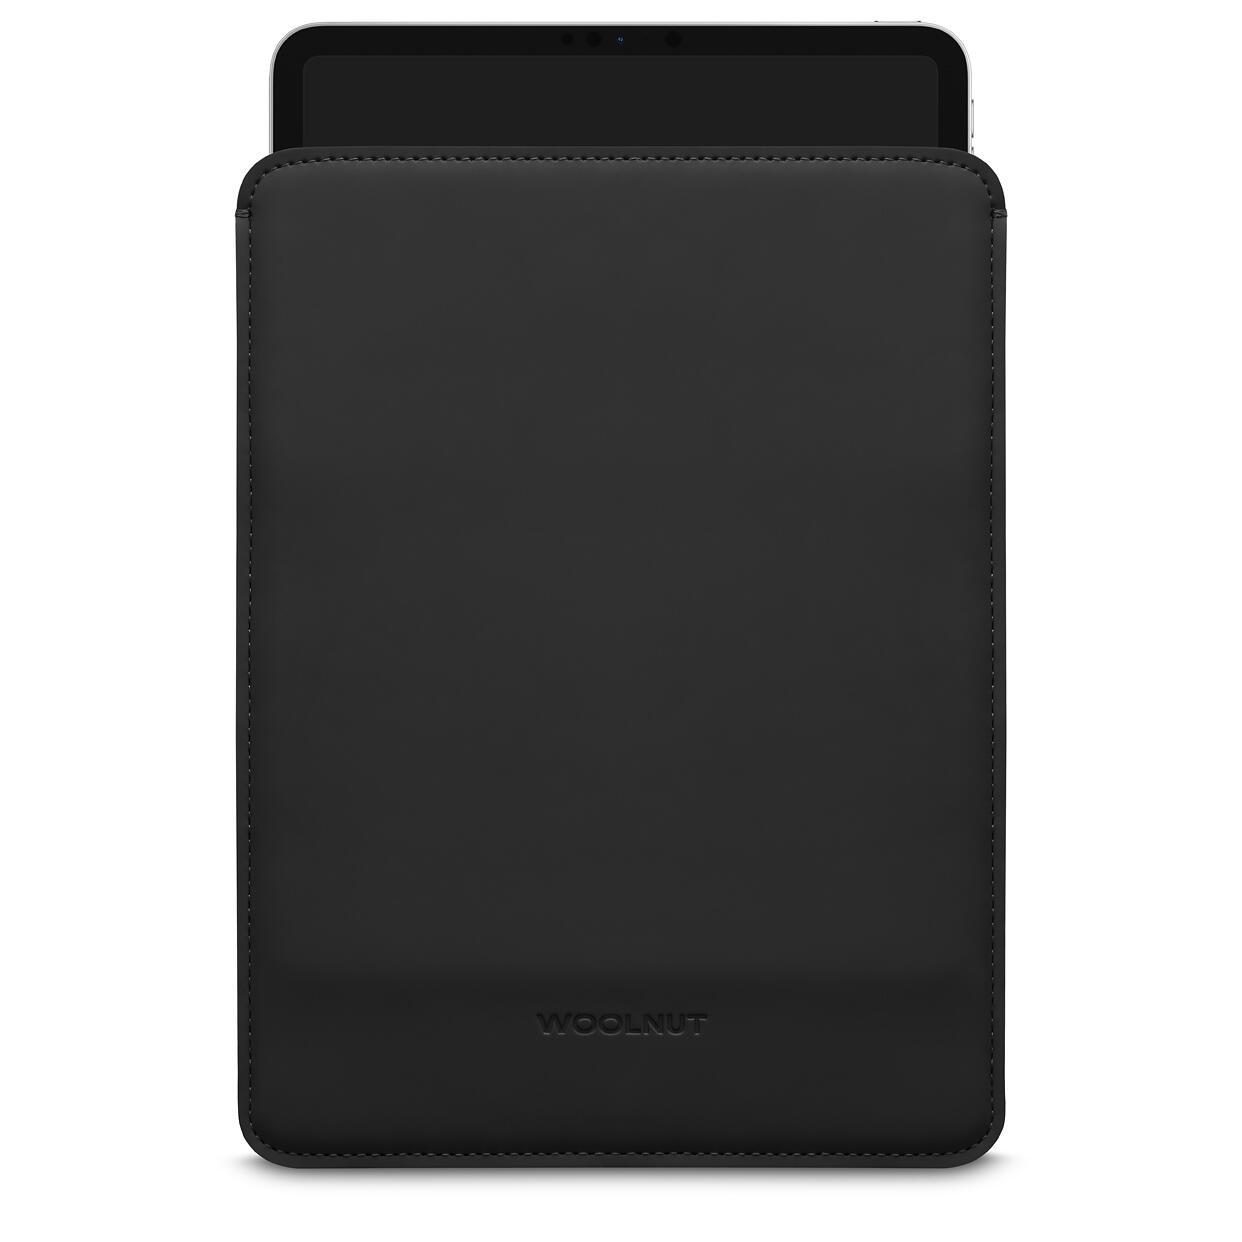 Woolnut beschichtete iPad Hülle für iPad Pro 11" & iPad Air , schwarz von Woolnut